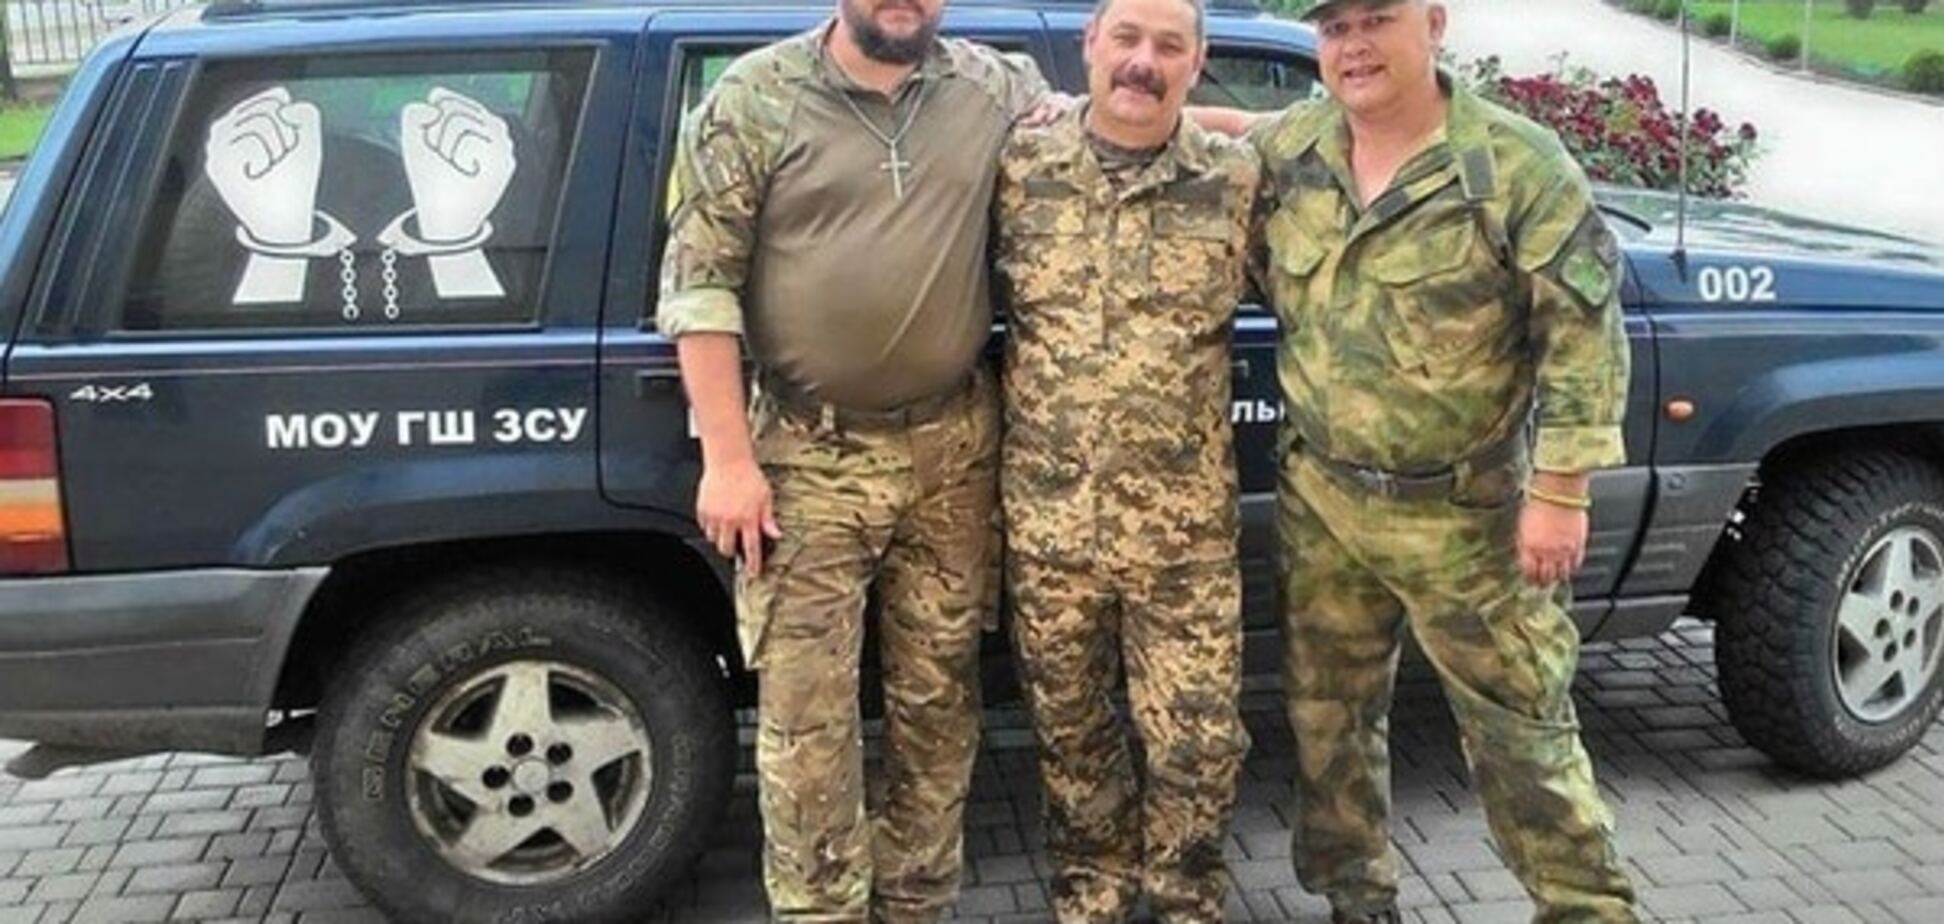 Из плена террористов освобожден украинский военнослужащий: опубликованы фото